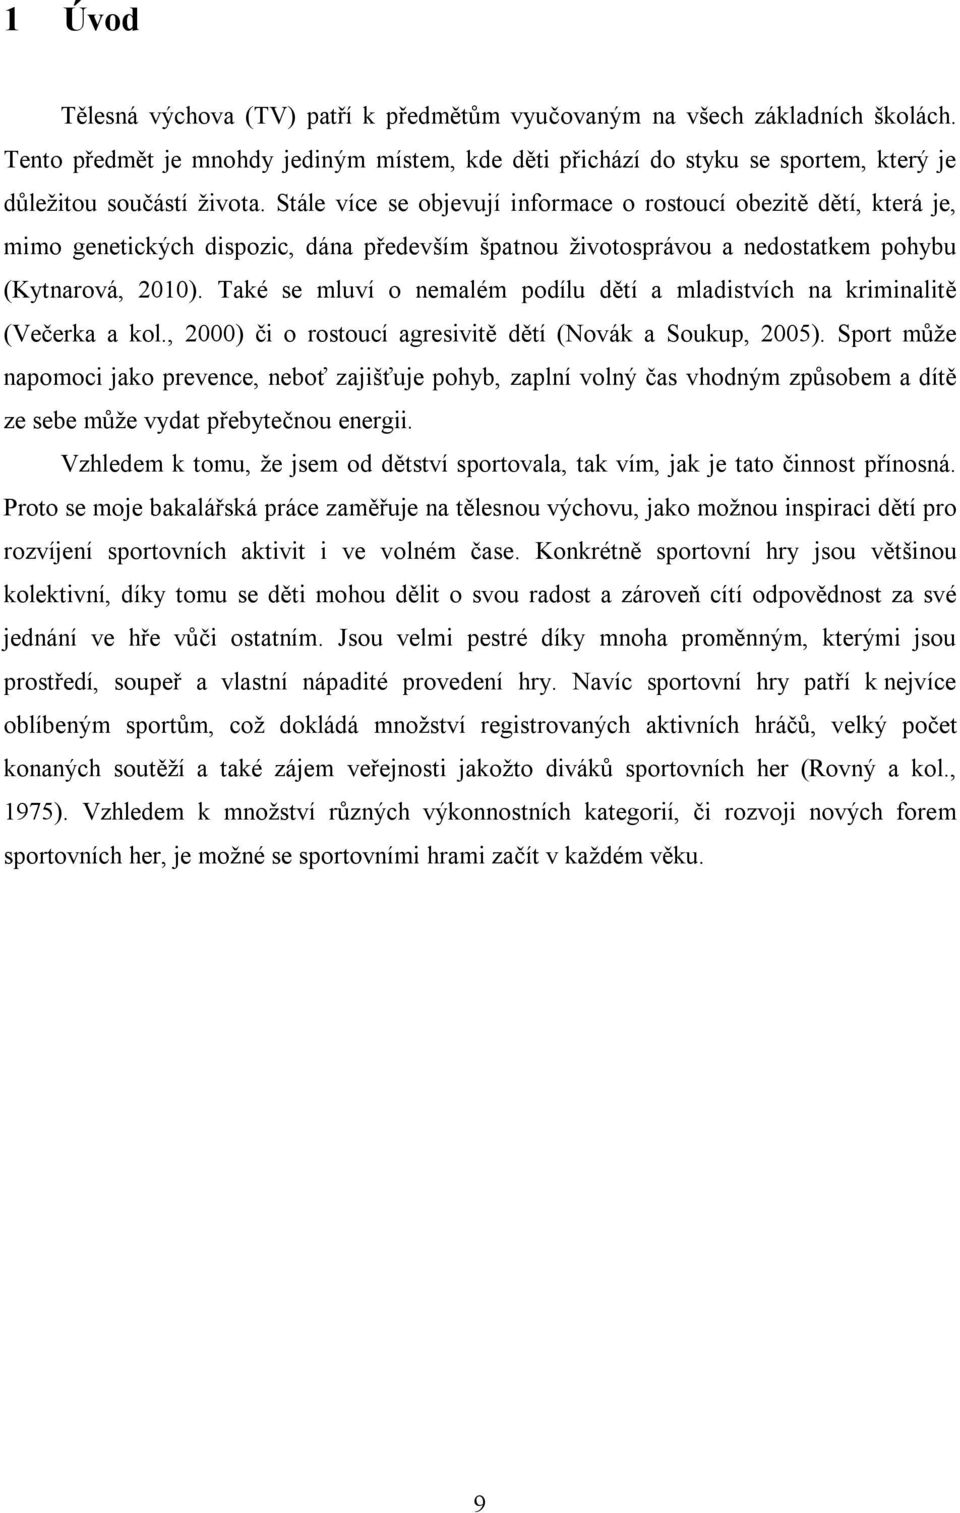 Také se mluví o nemalém podílu dětí a mladistvích na kriminalitě (Večerka a kol., 2000) či o rostoucí agresivitě dětí (Novák a Soukup, 2005).